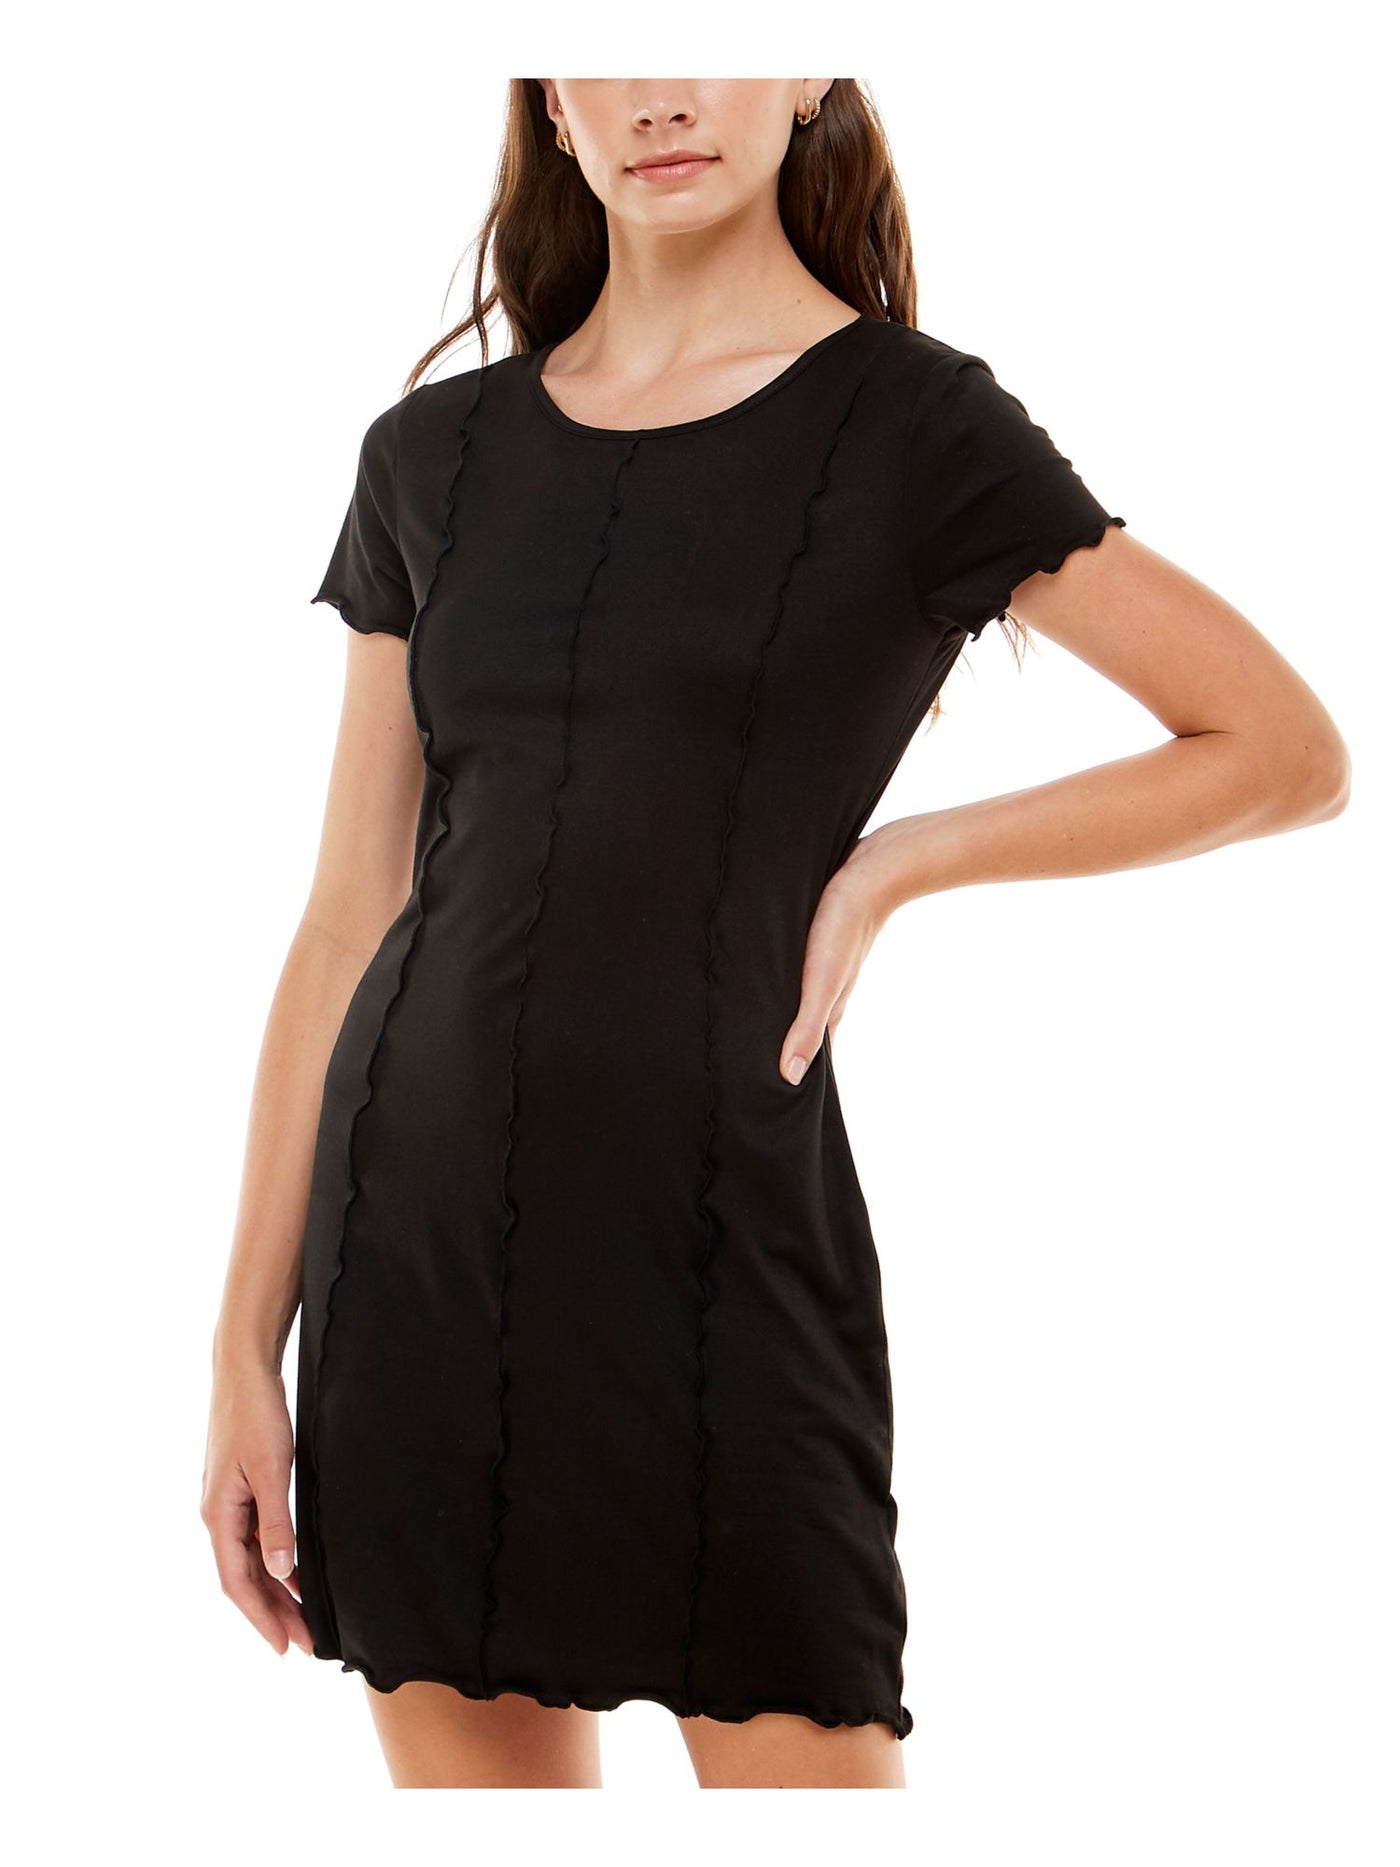 ULTRA FLIRT Womens Black Stretch Short Sleeve Scoop Neck Short Shift Dress Juniors M